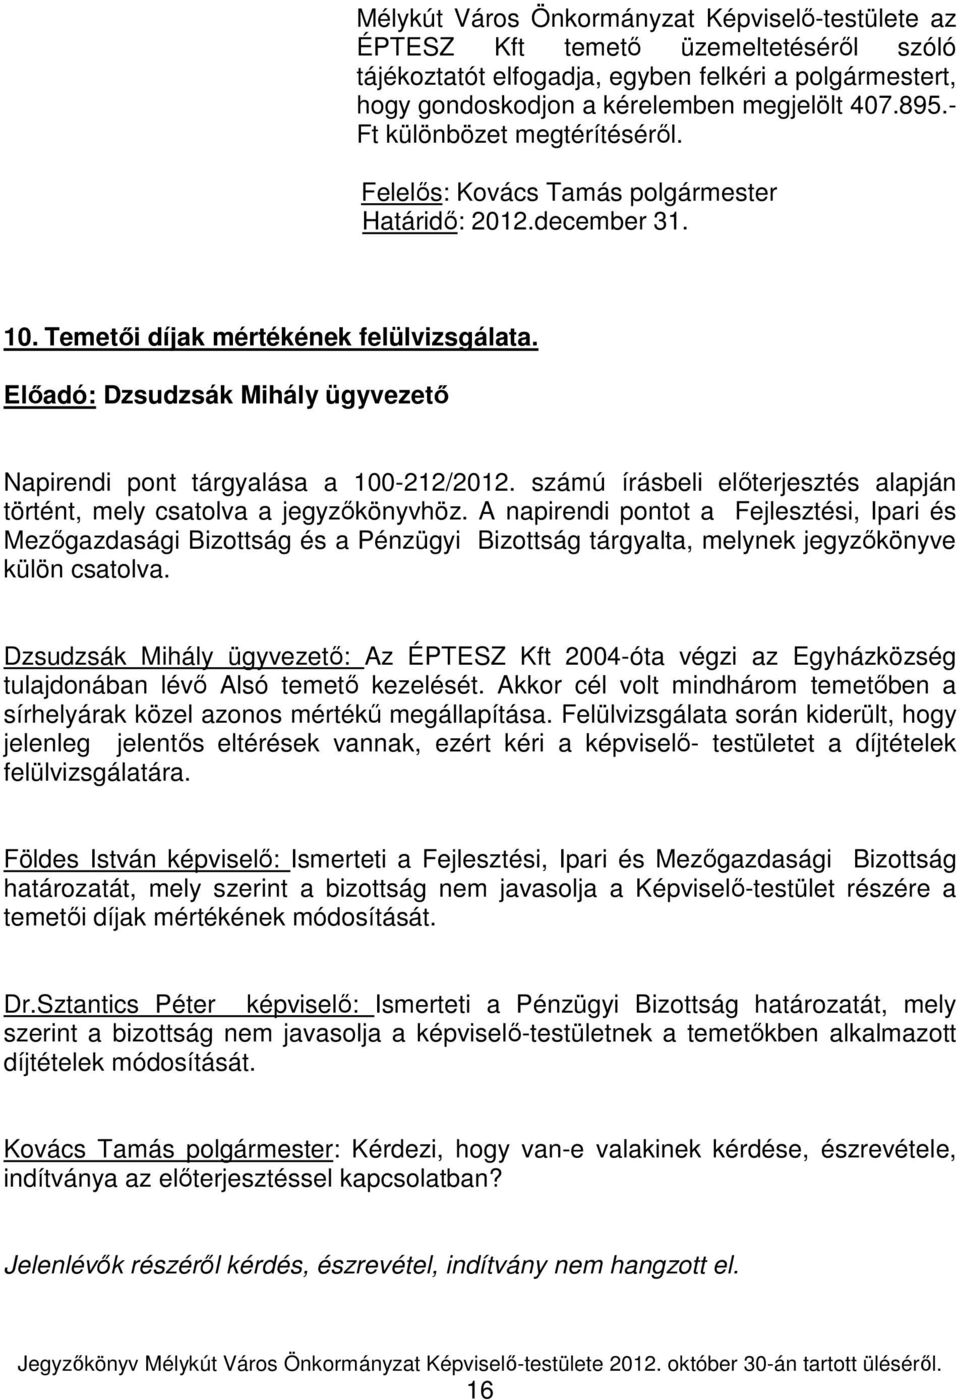 Elıadó: Dzsudzsák Mihály ügyvezetı Napirendi pont tárgyalása a 100-212/2012. számú írásbeli elıterjesztés alapján történt, mely csatolva a jegyzıkönyvhöz.